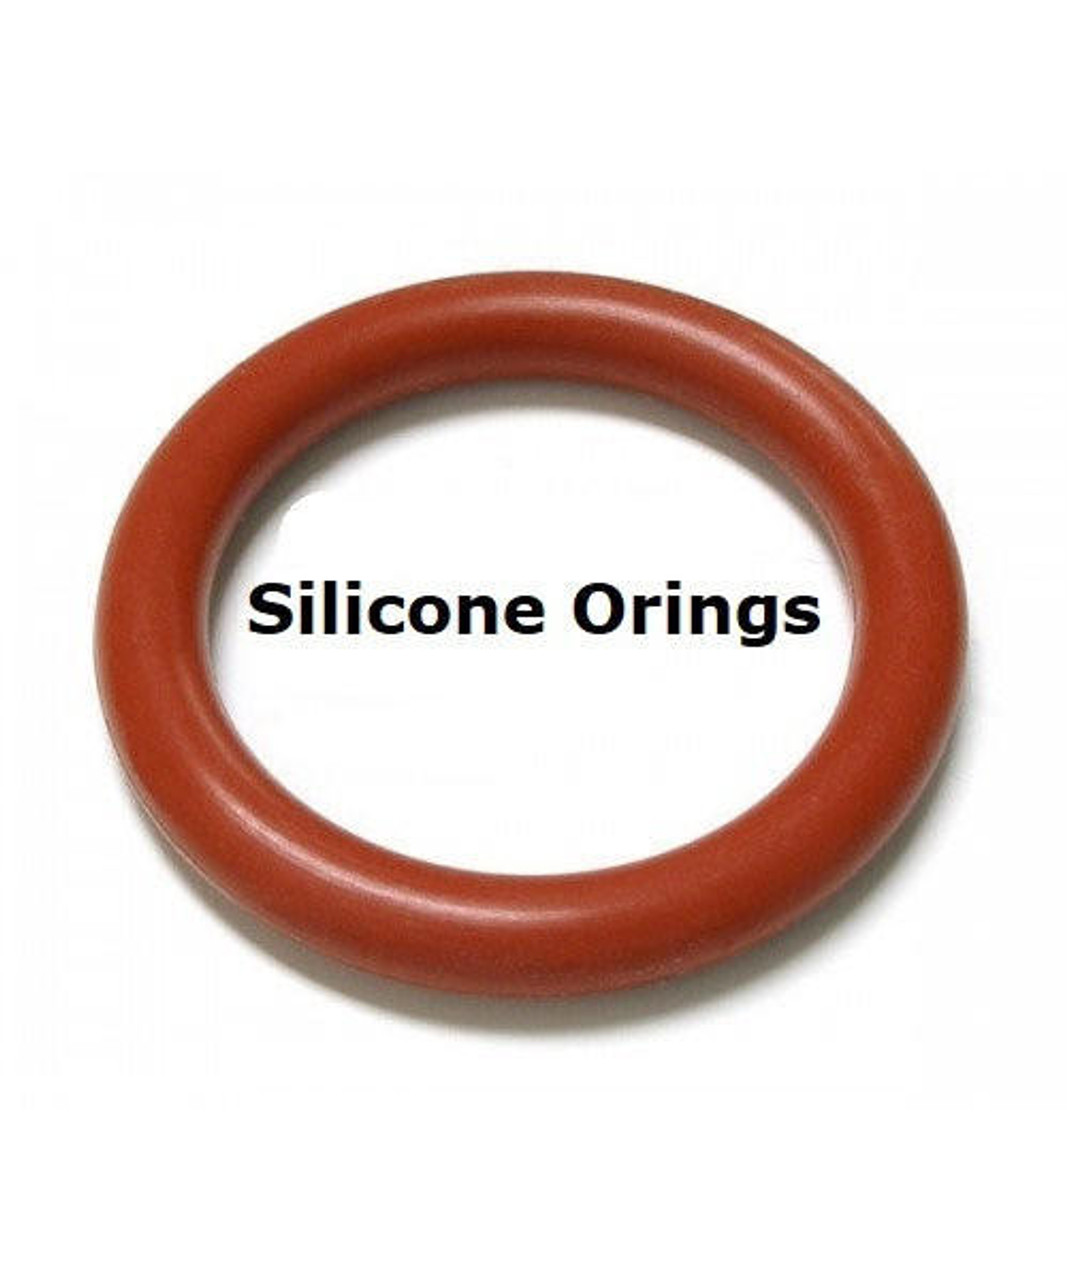 Silicone O-rings Size 338   Minimum 2 pcs